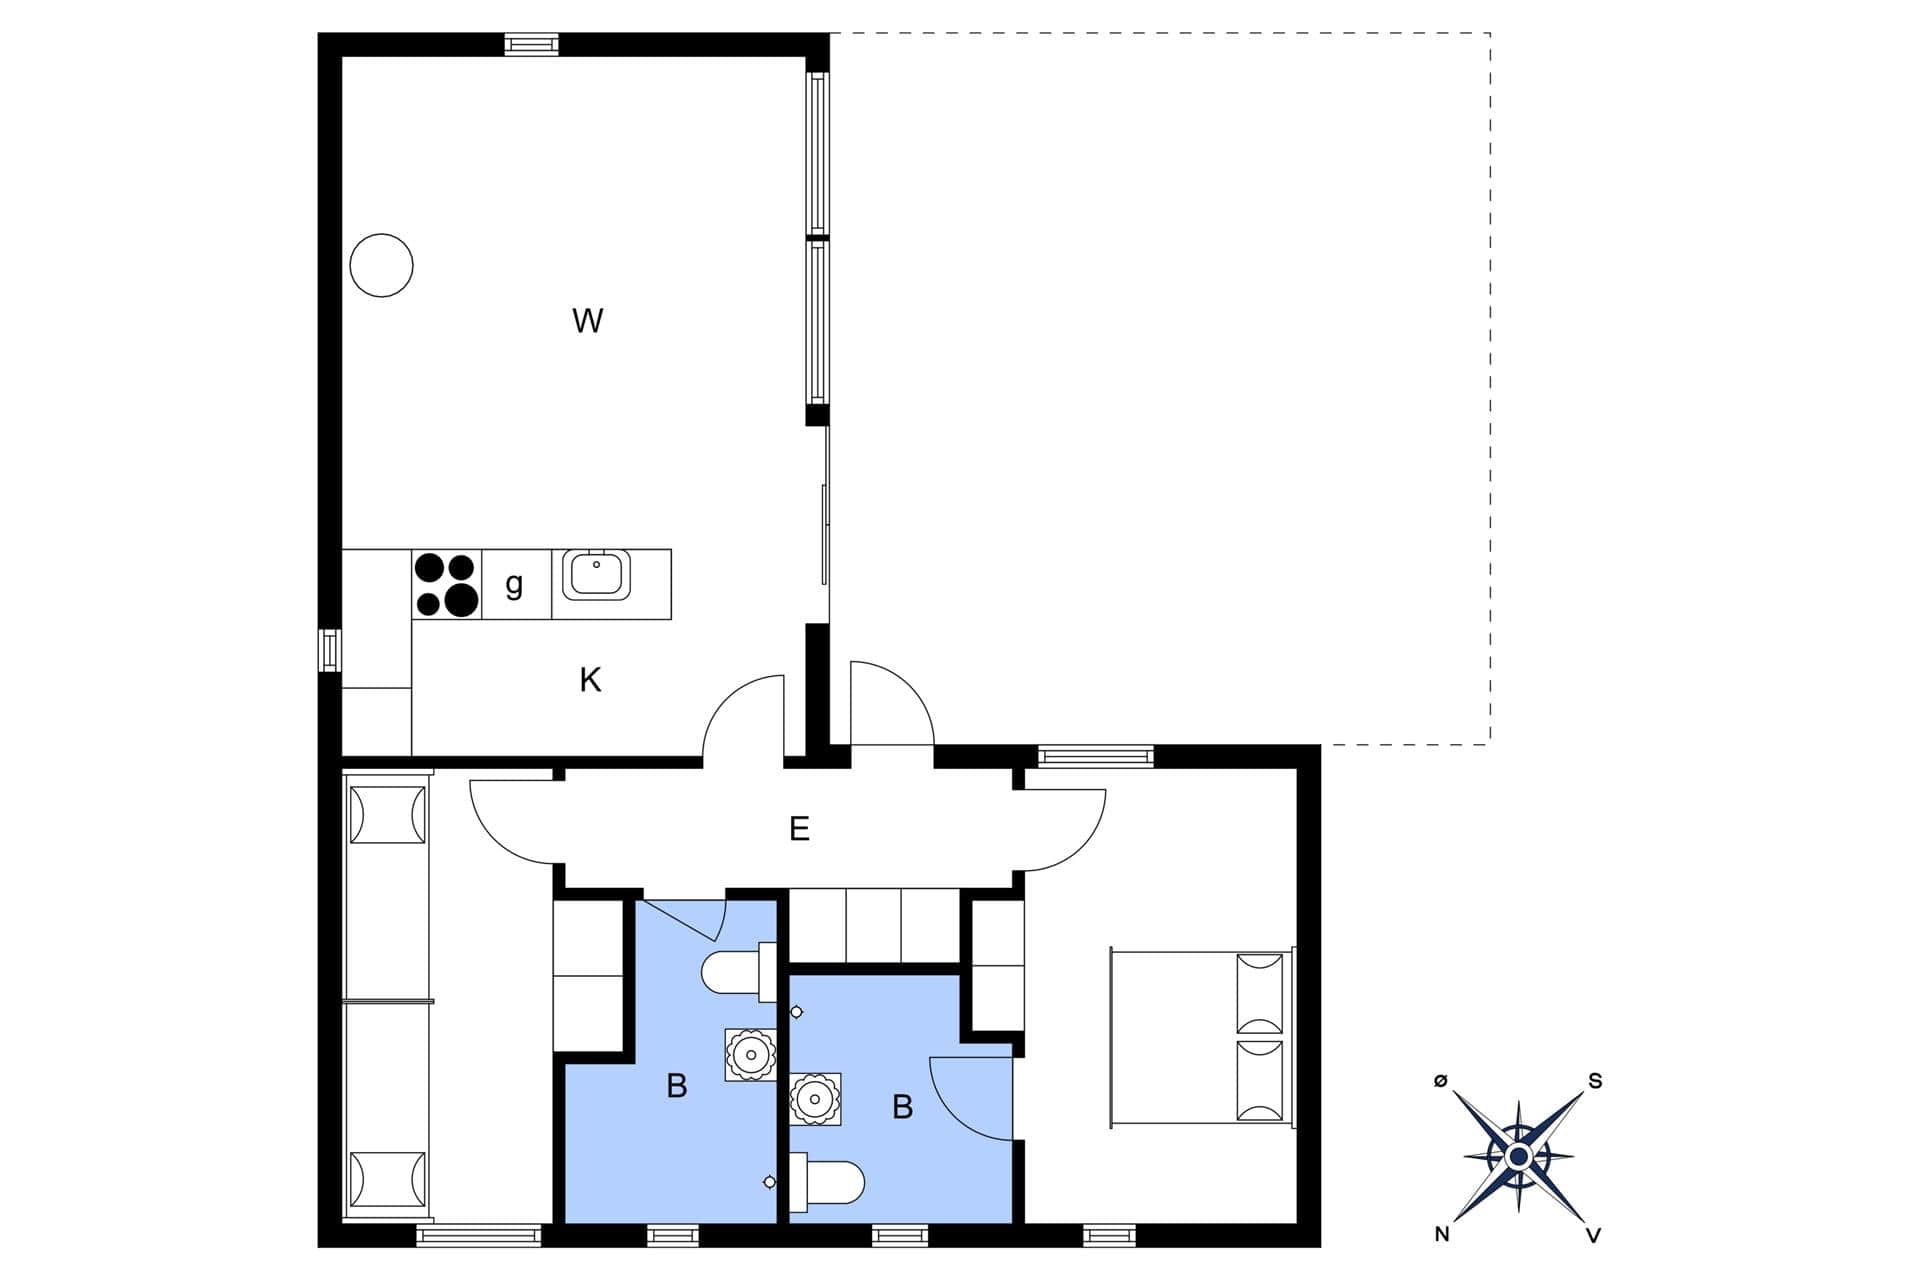 Interior 4-3 Holiday-home M642758, Oddevejen 8, DK - 5500 Middelfart